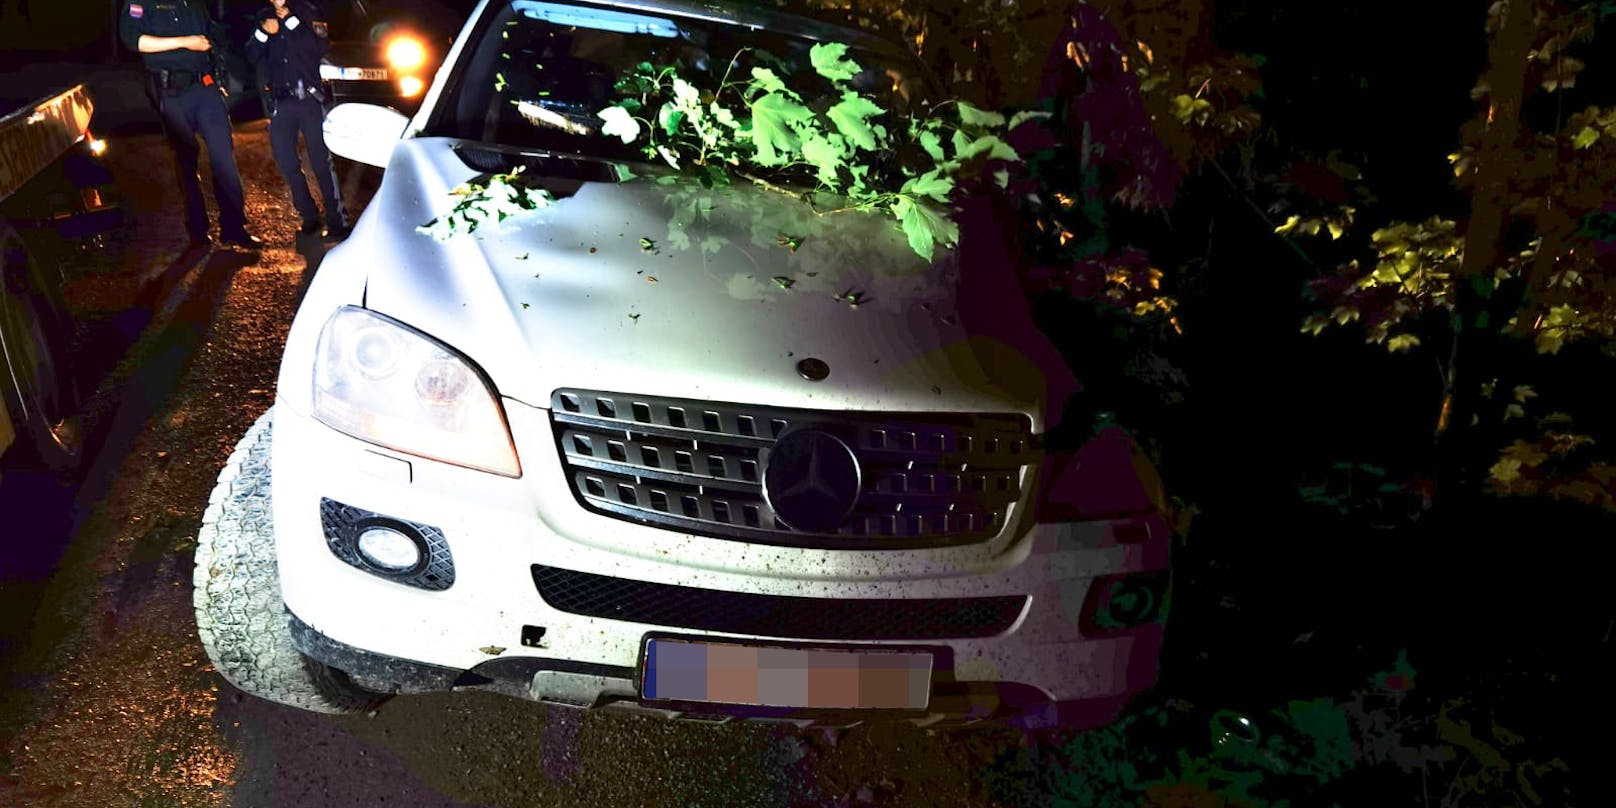 Der Fahrer eines Mercedes mit bayrischem Kennzeichen ließ seine Beifahrerin verletzt im Auto zurück und flüchtete.